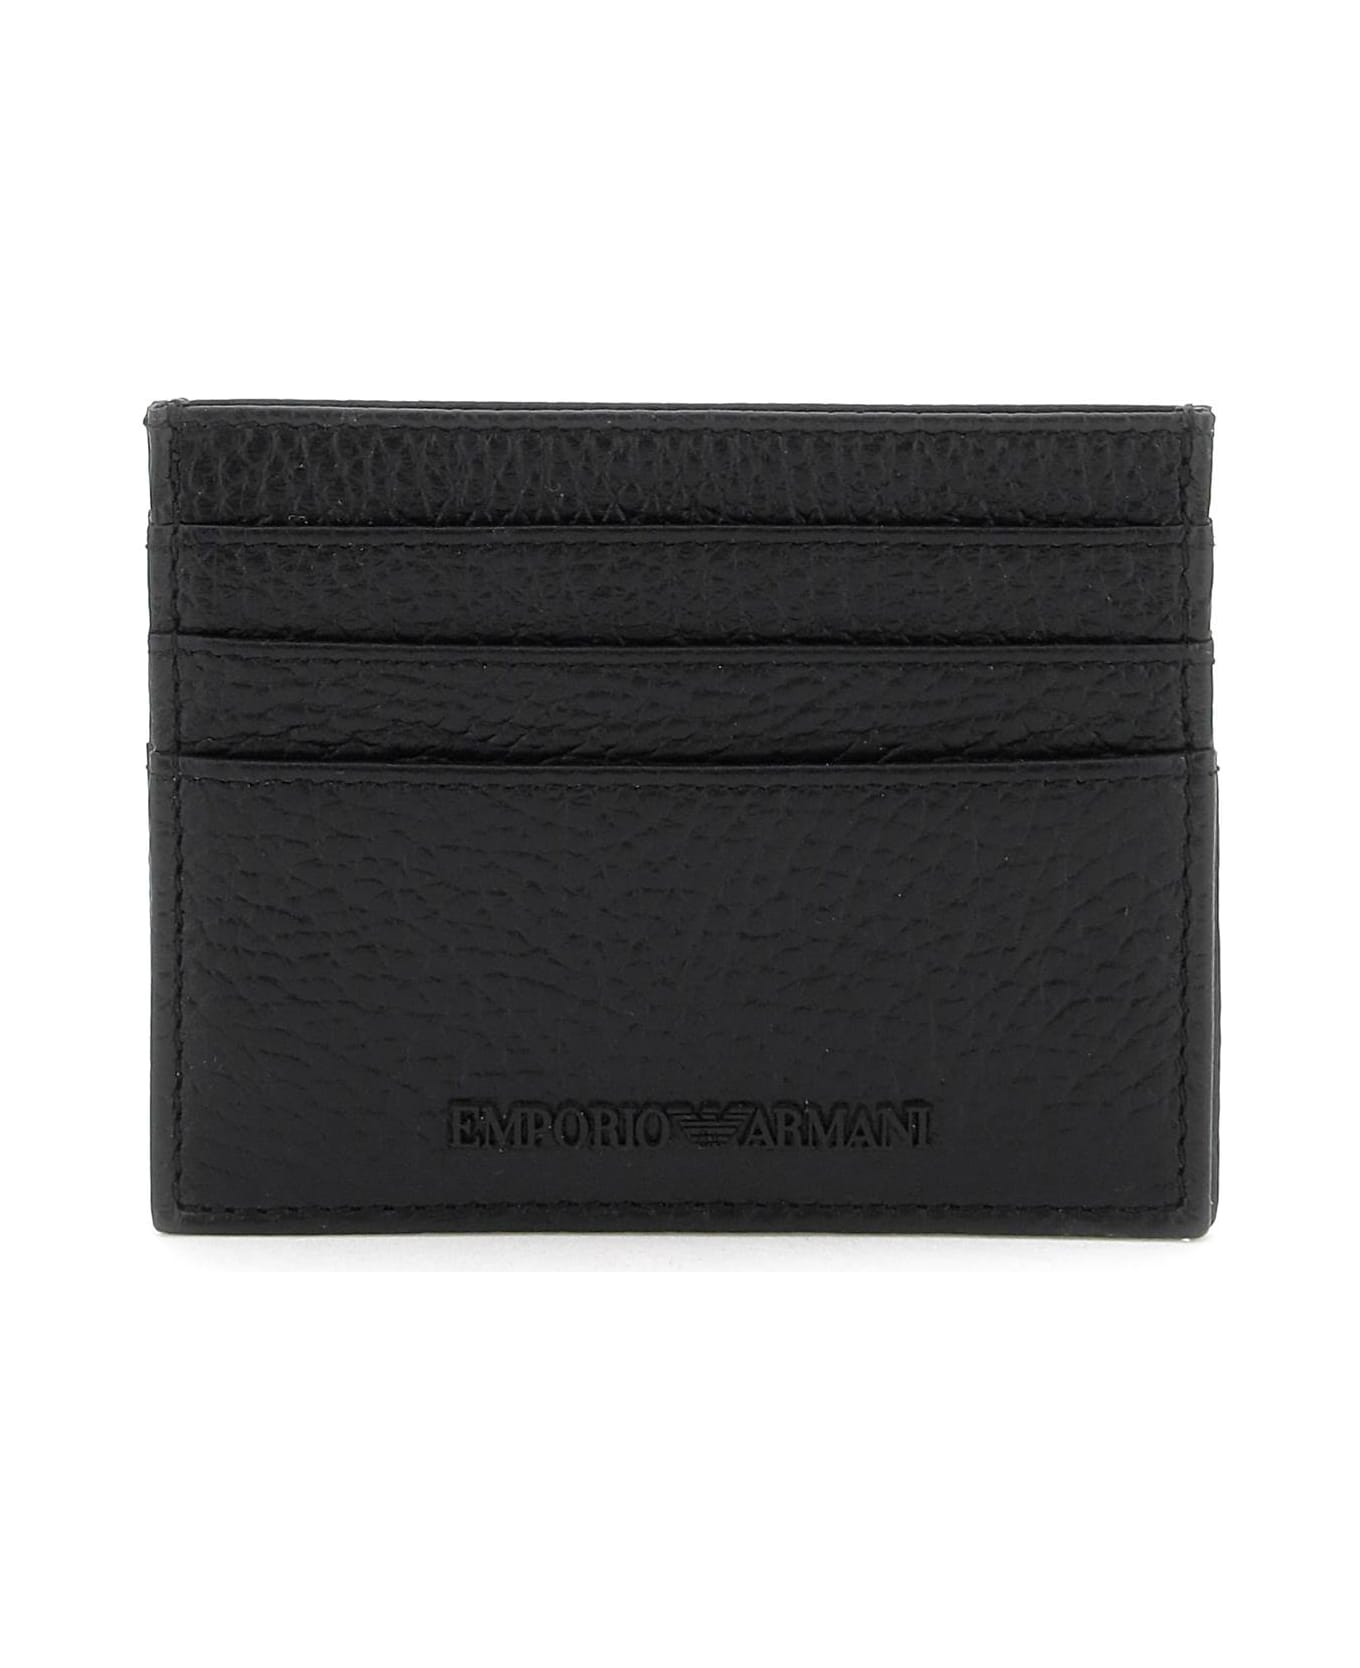 Emporio Armani Grained Leather Cardholder - Nero